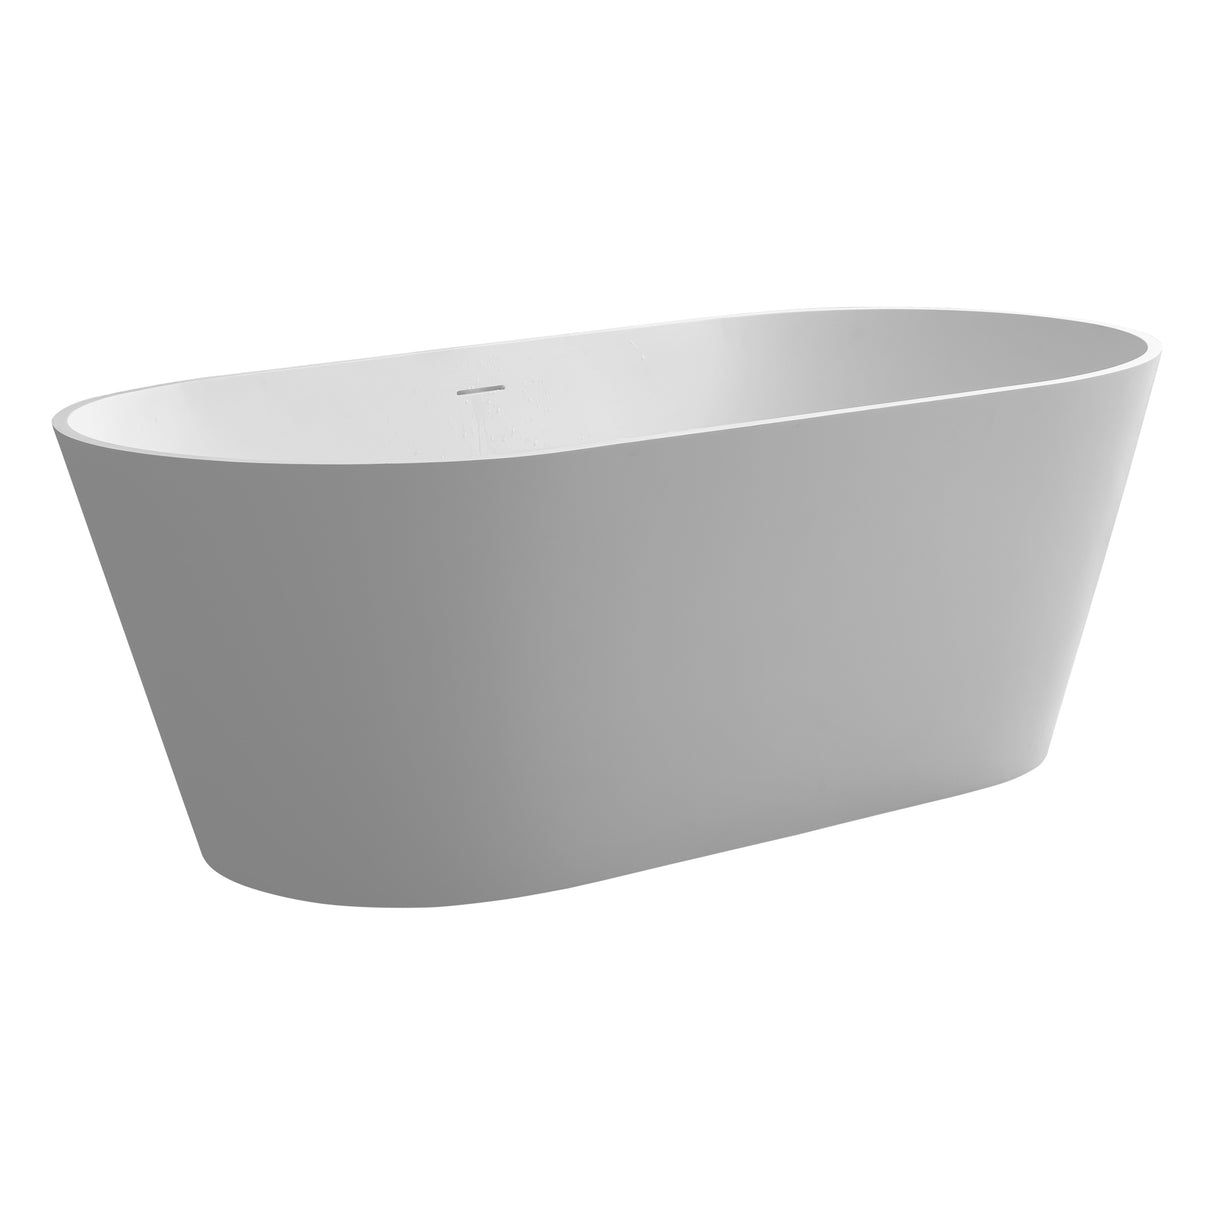 1600mm solid surface bathtub for bathroom